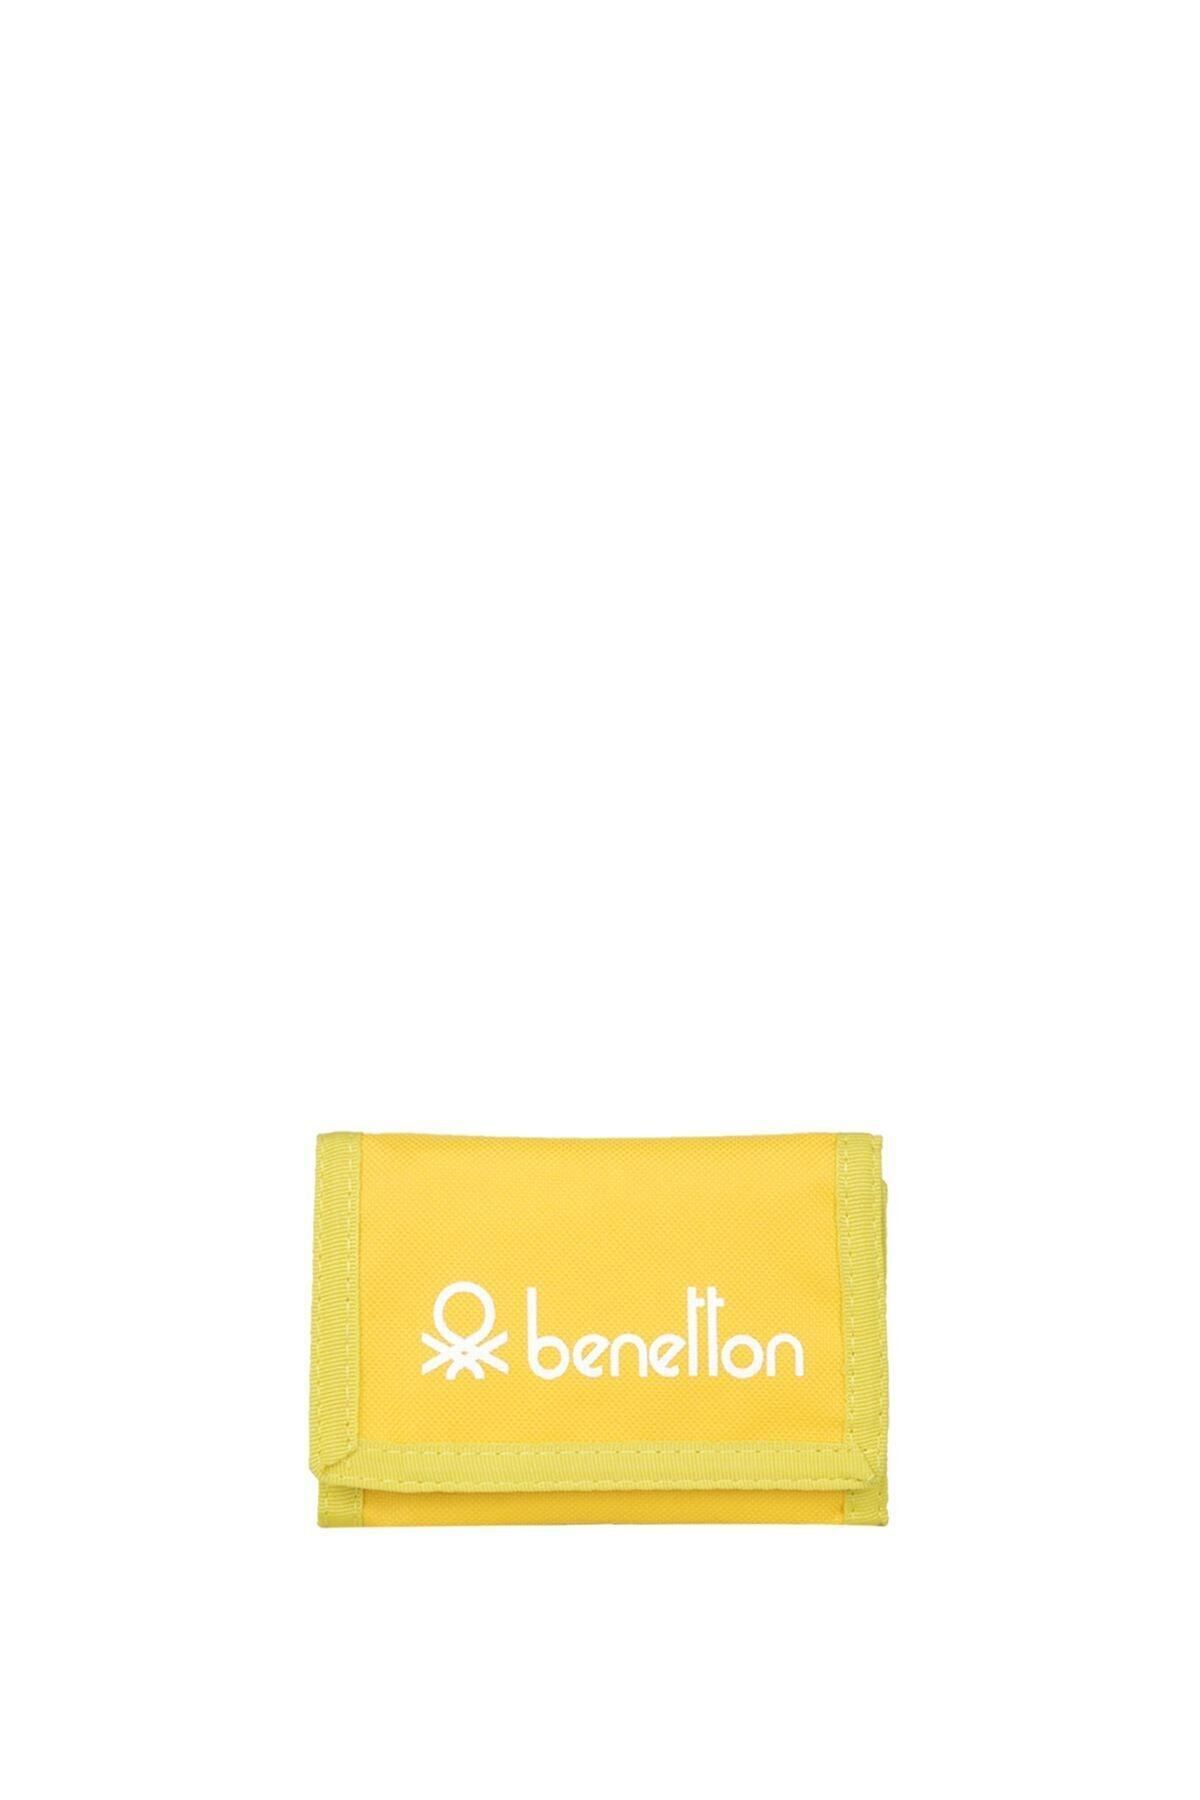 United Colors of Benetton Benetton Unisex Spor Cüzdan - Sarı.